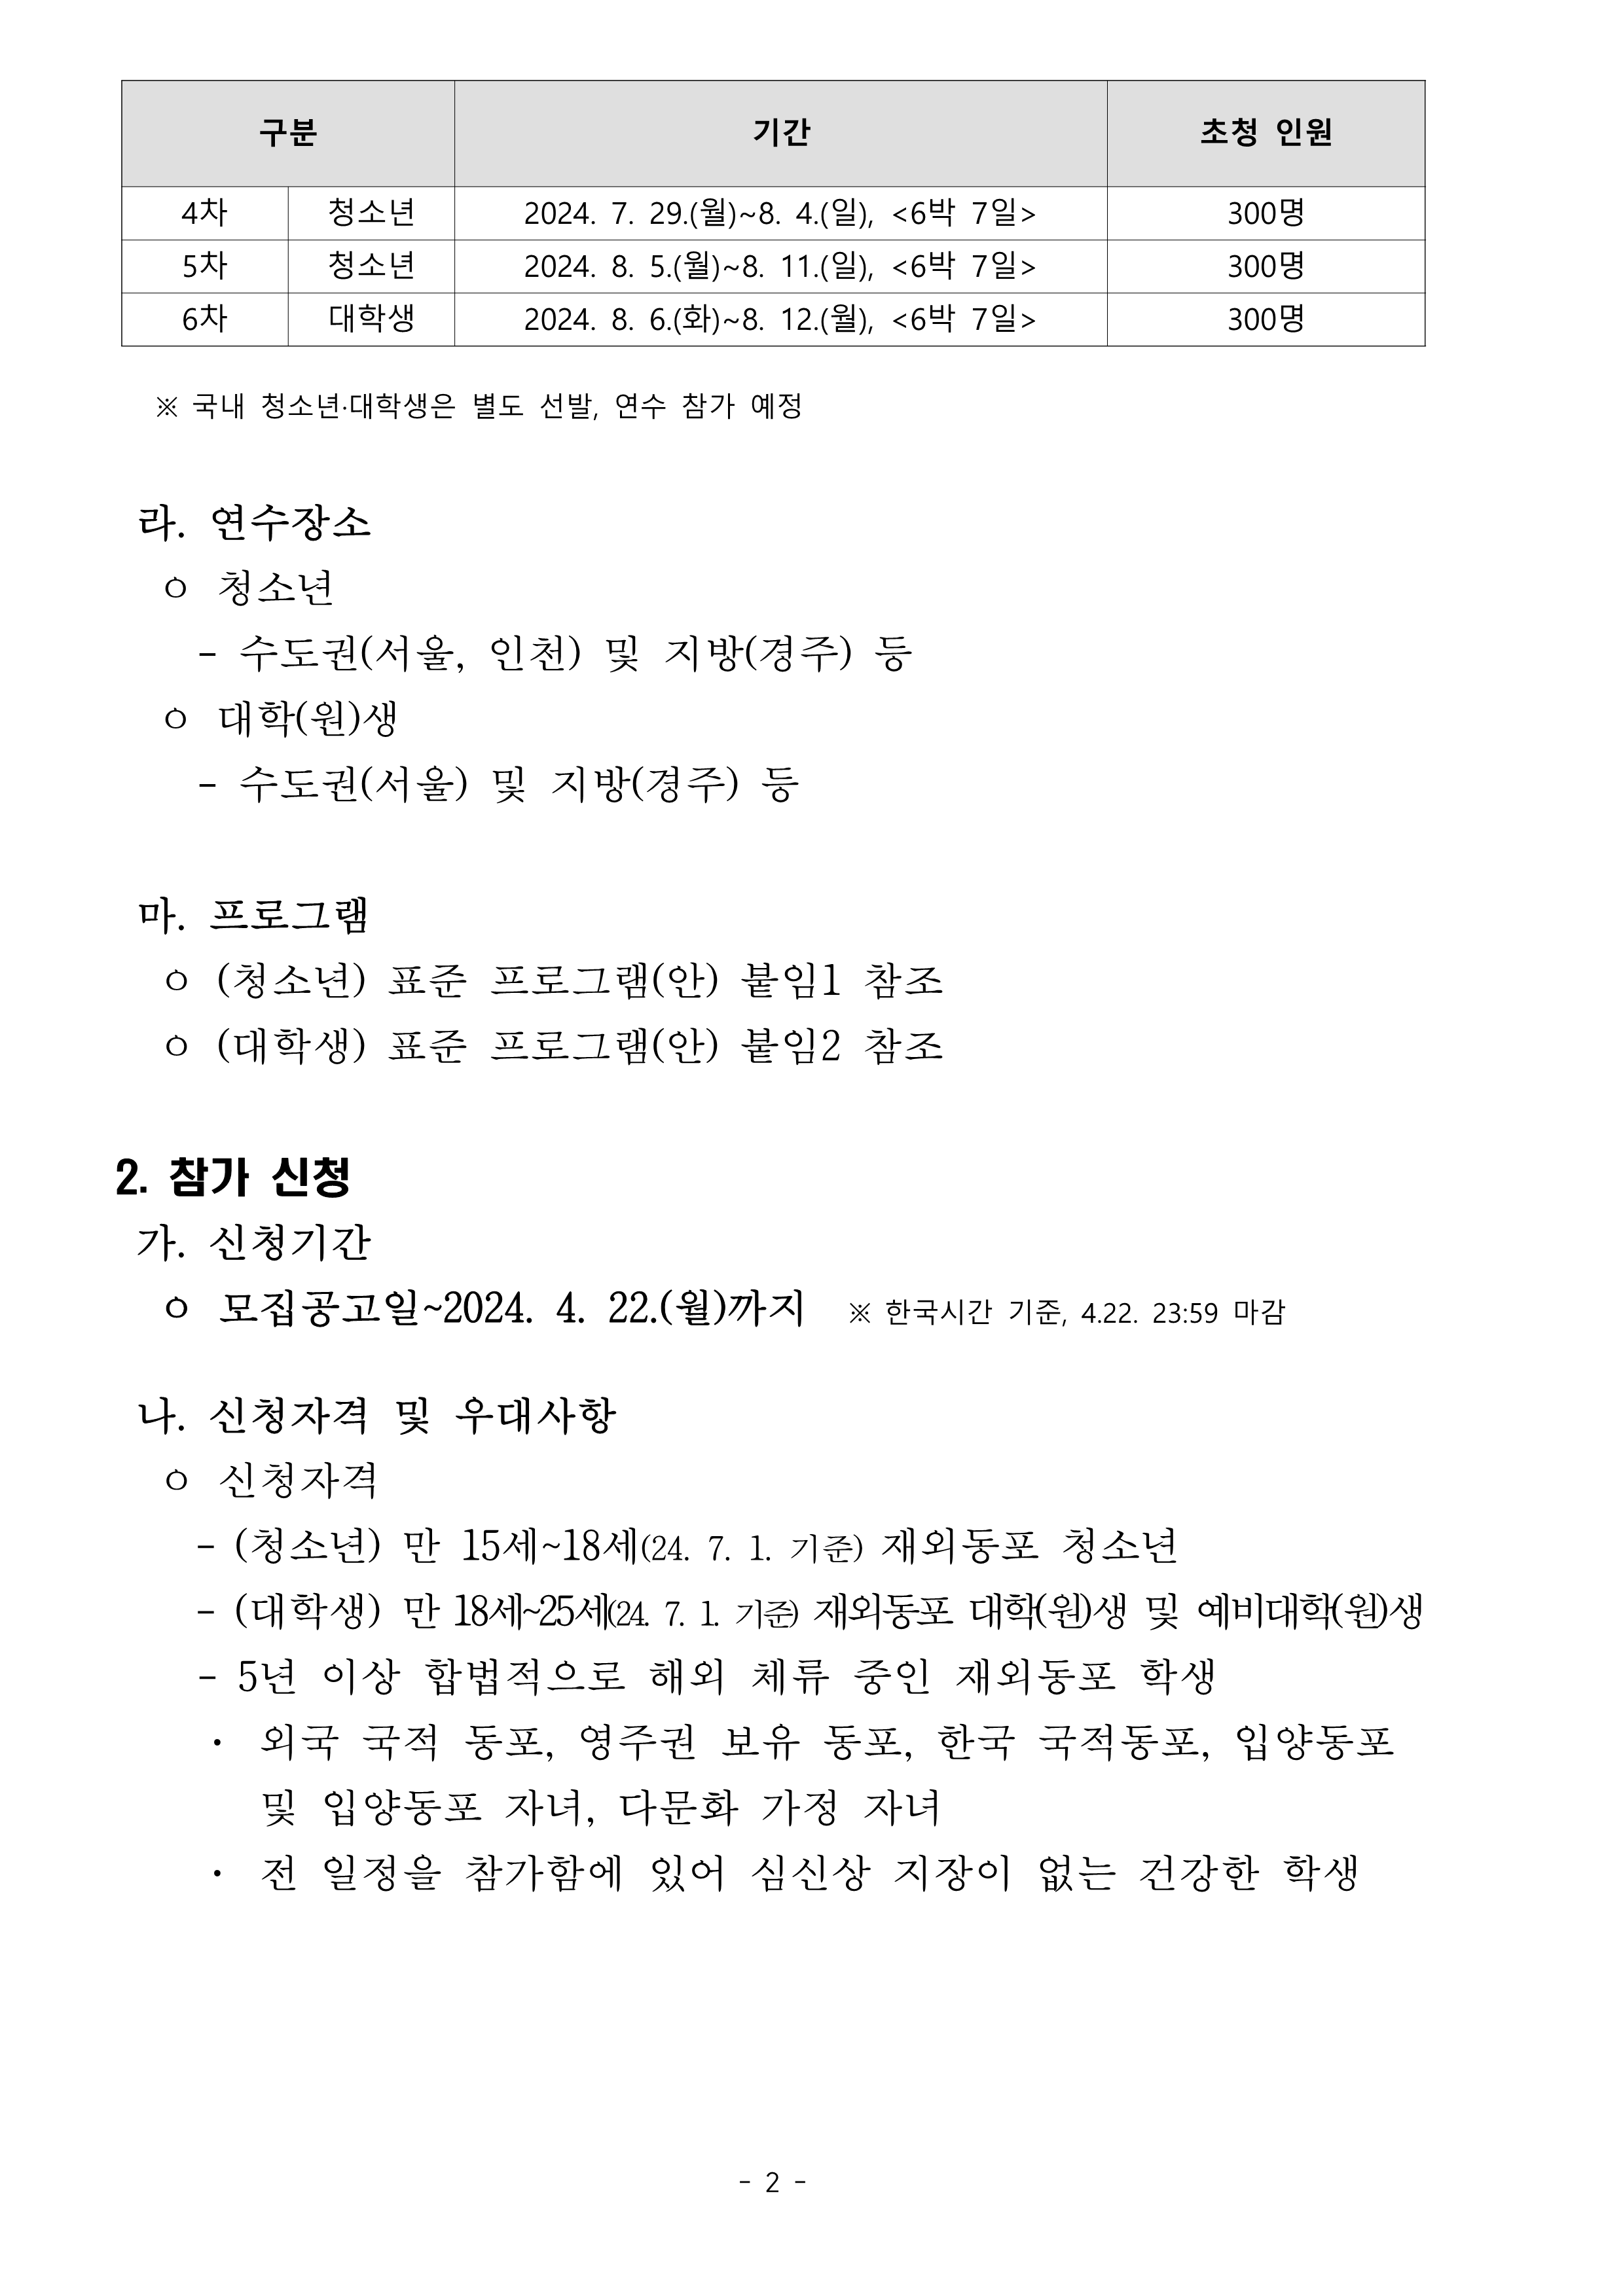 TalkFile_1. (Korean) 2024 재외동포 청소년·대학생 모국연수 참가자 모집공고.pdf_2.png